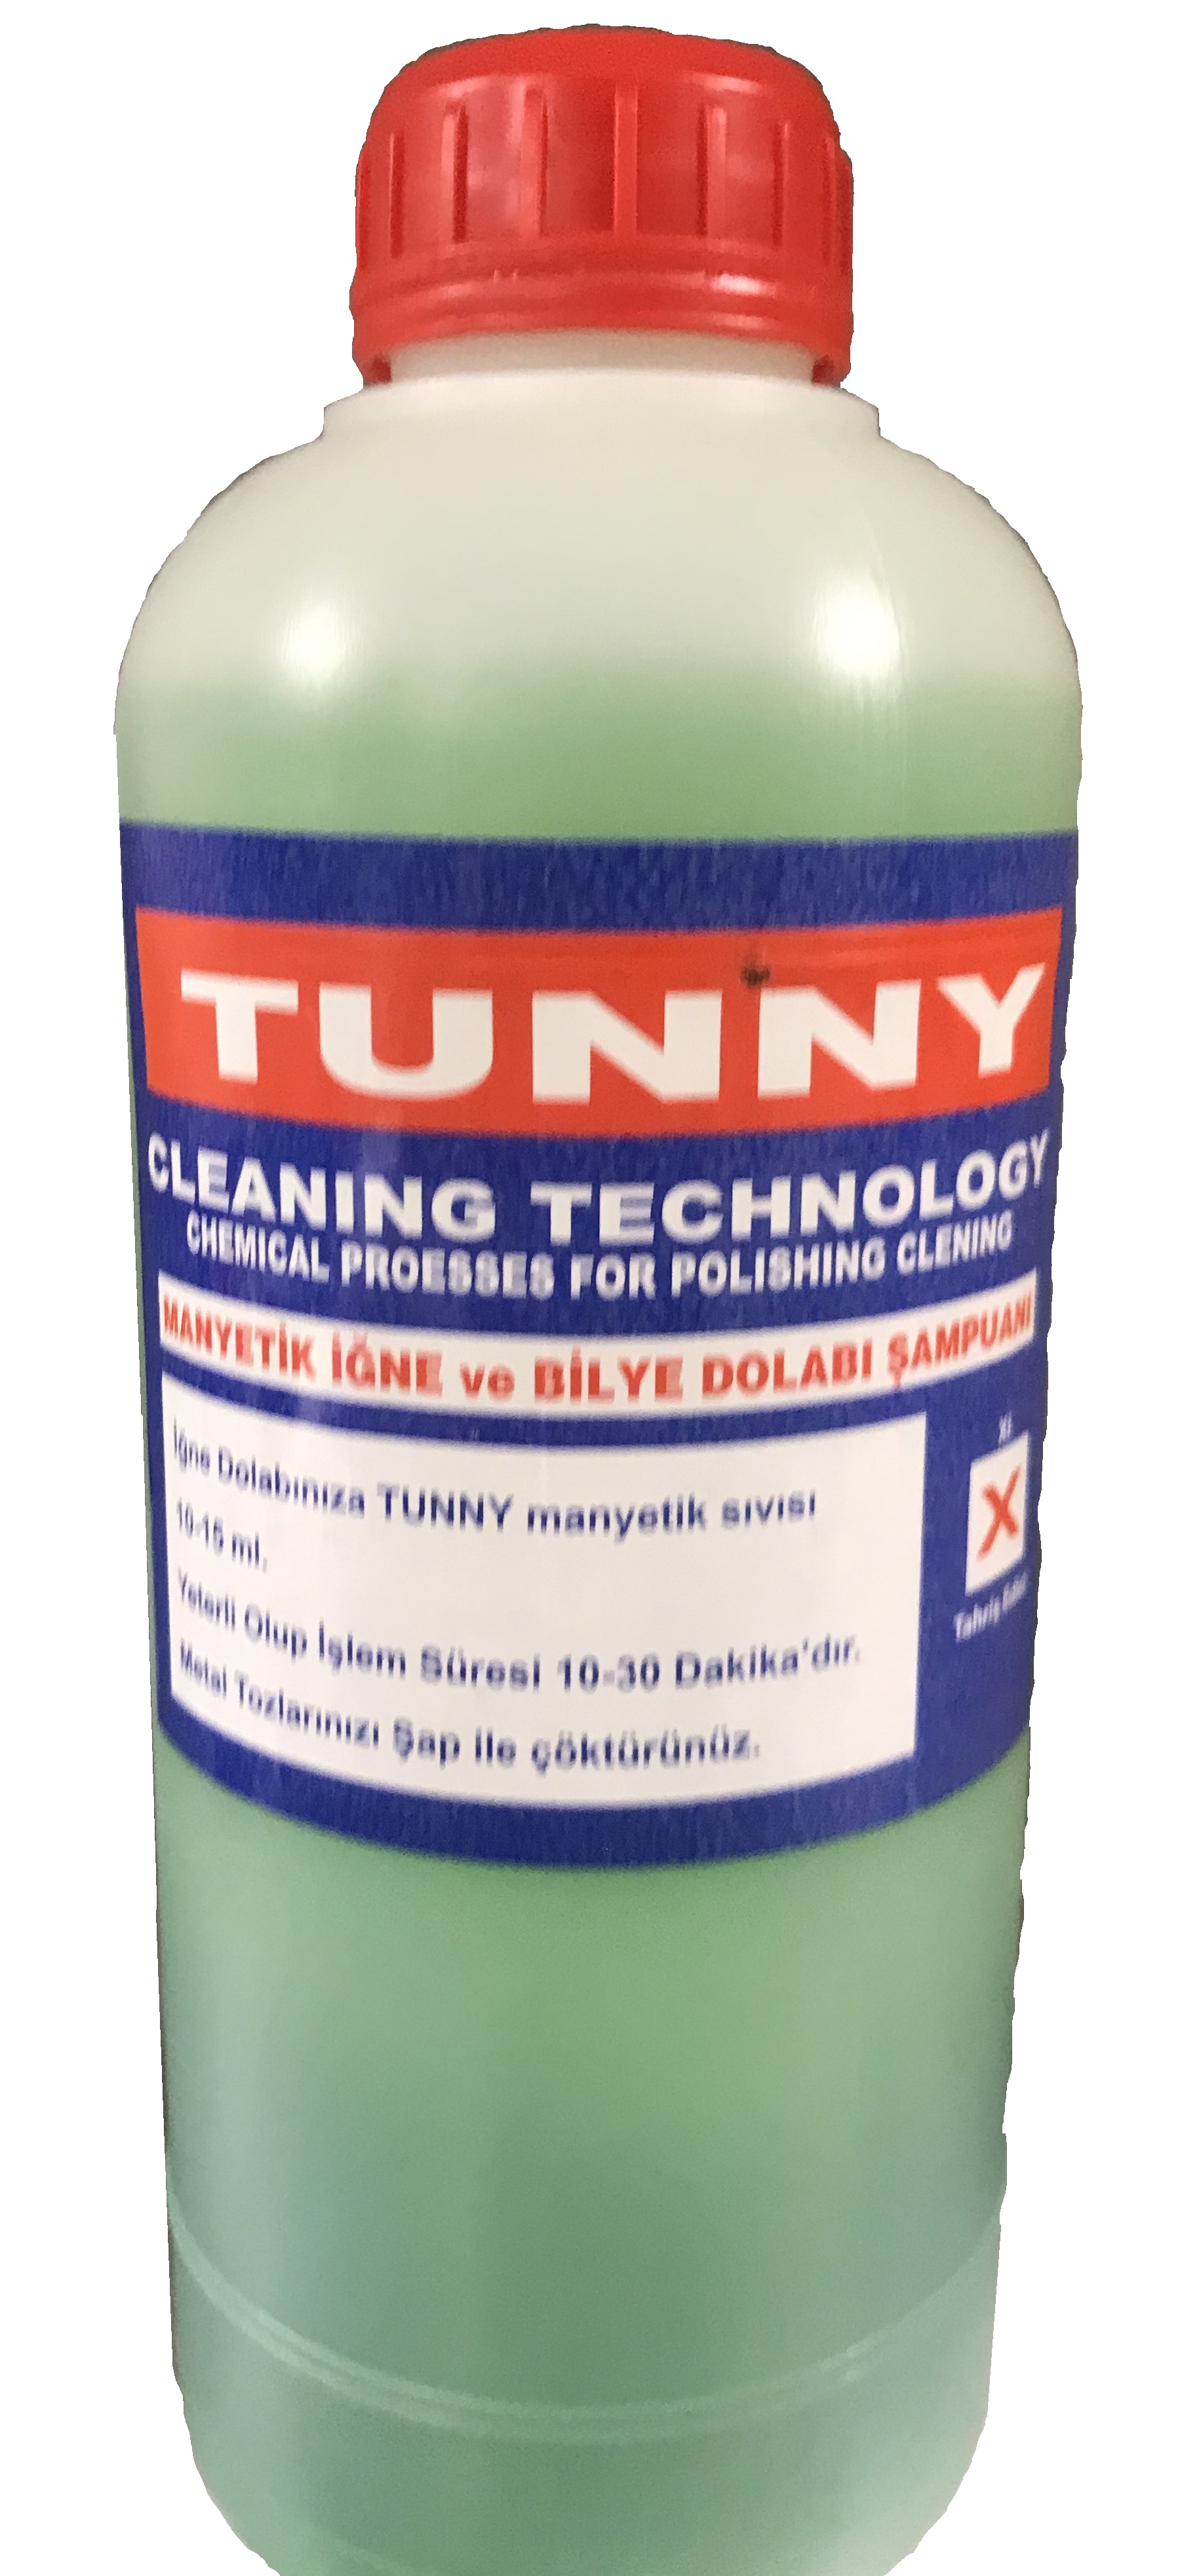 Tunny İğne-Bilye Dolabı Şampuanı